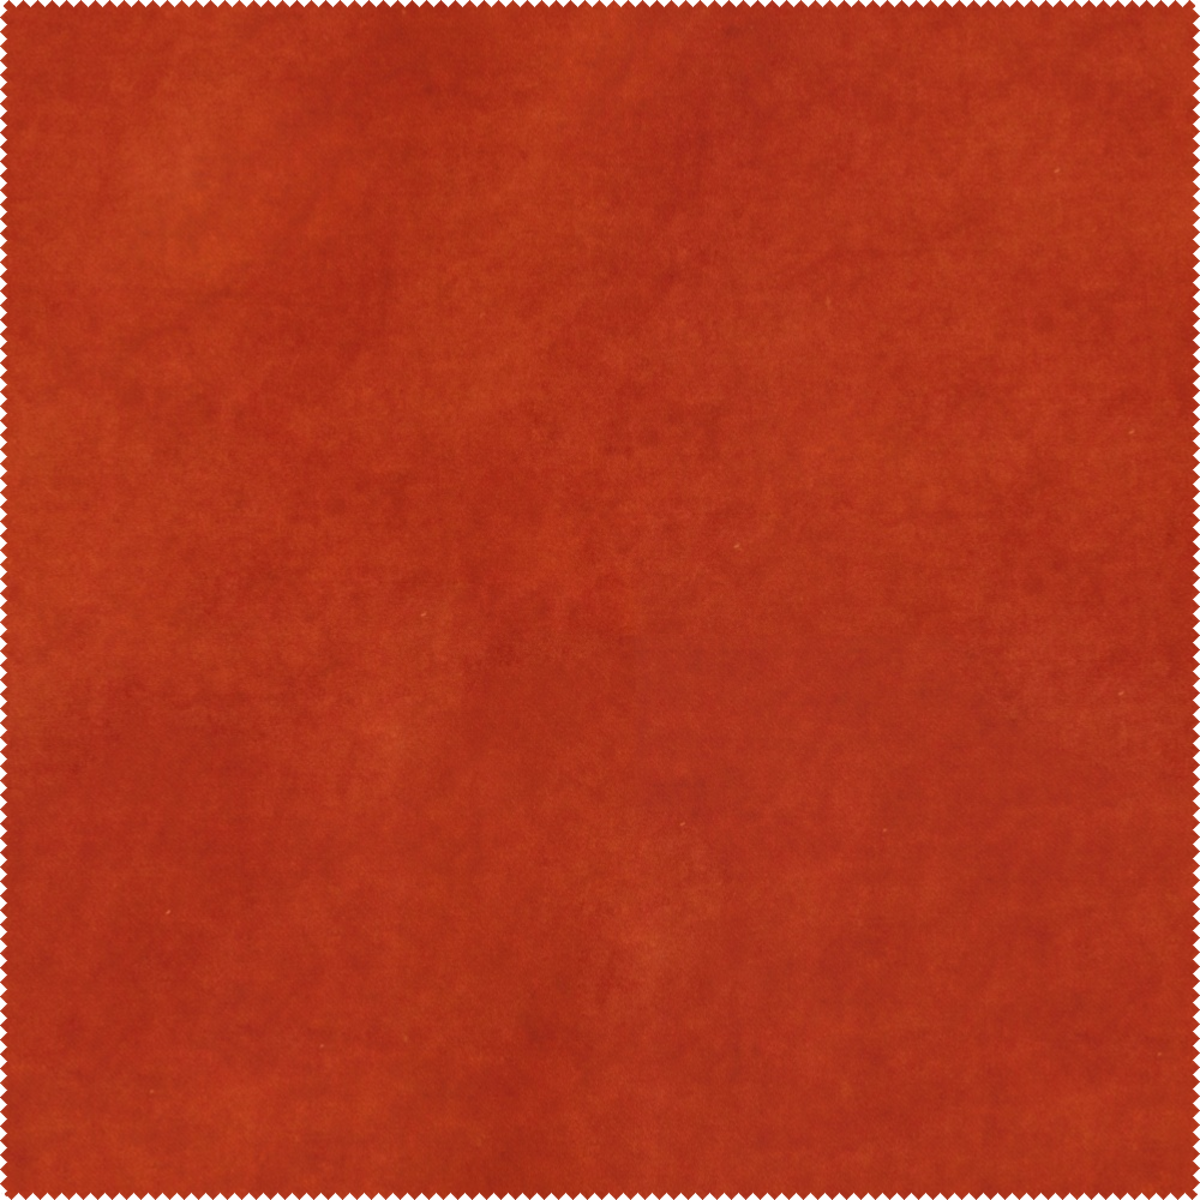 Rdzawa tkanina Bellagio 62 Aquaclean, idealna na narożnik czy kanapę. Posiada właściwości łatwo czyszczące i delikatny połysk.